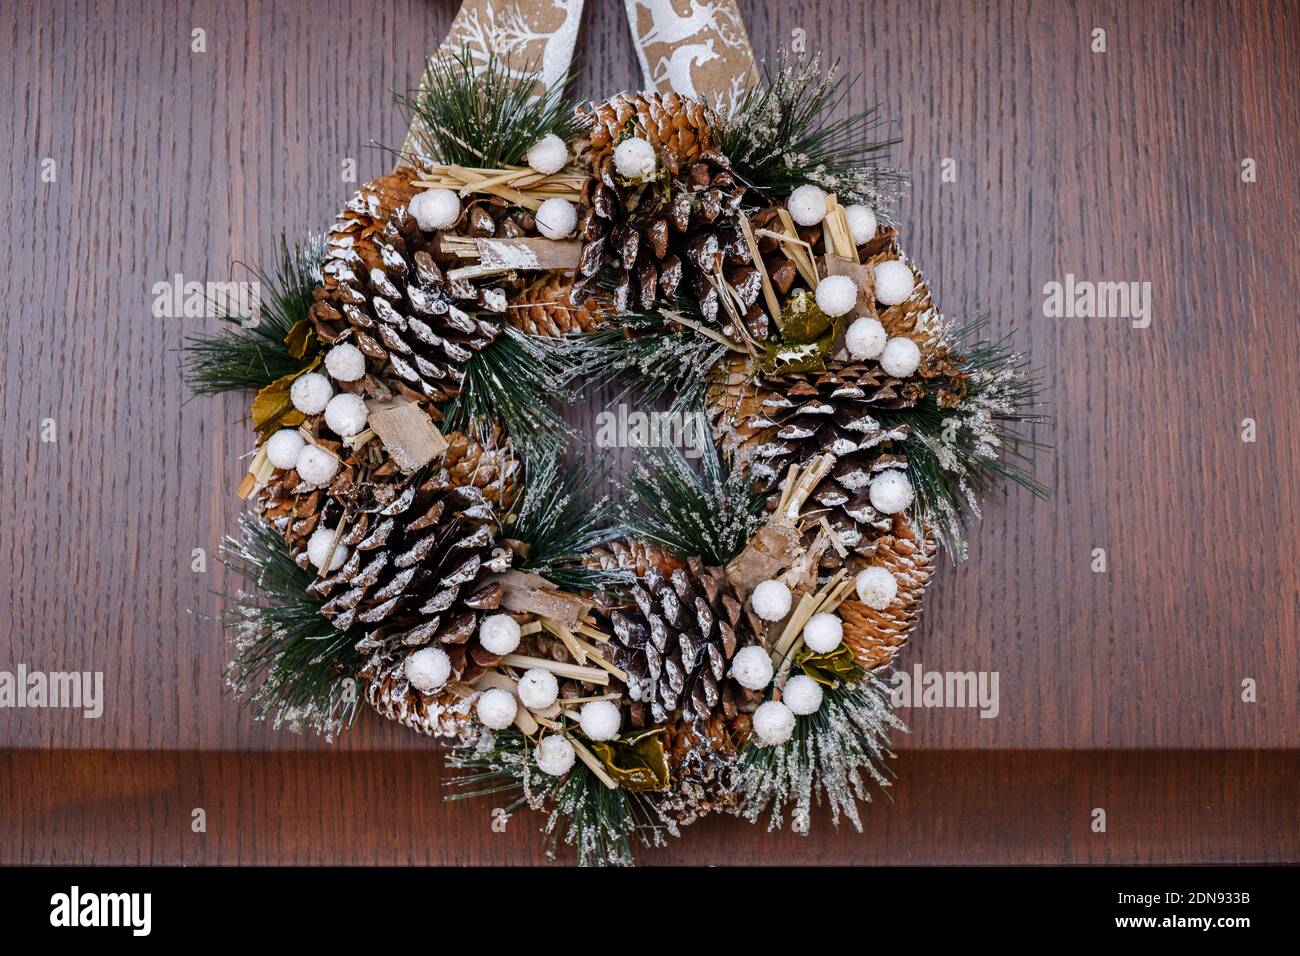 December 2020 - Milan: Christmas wreath hanging on a wooden door Stock Photo